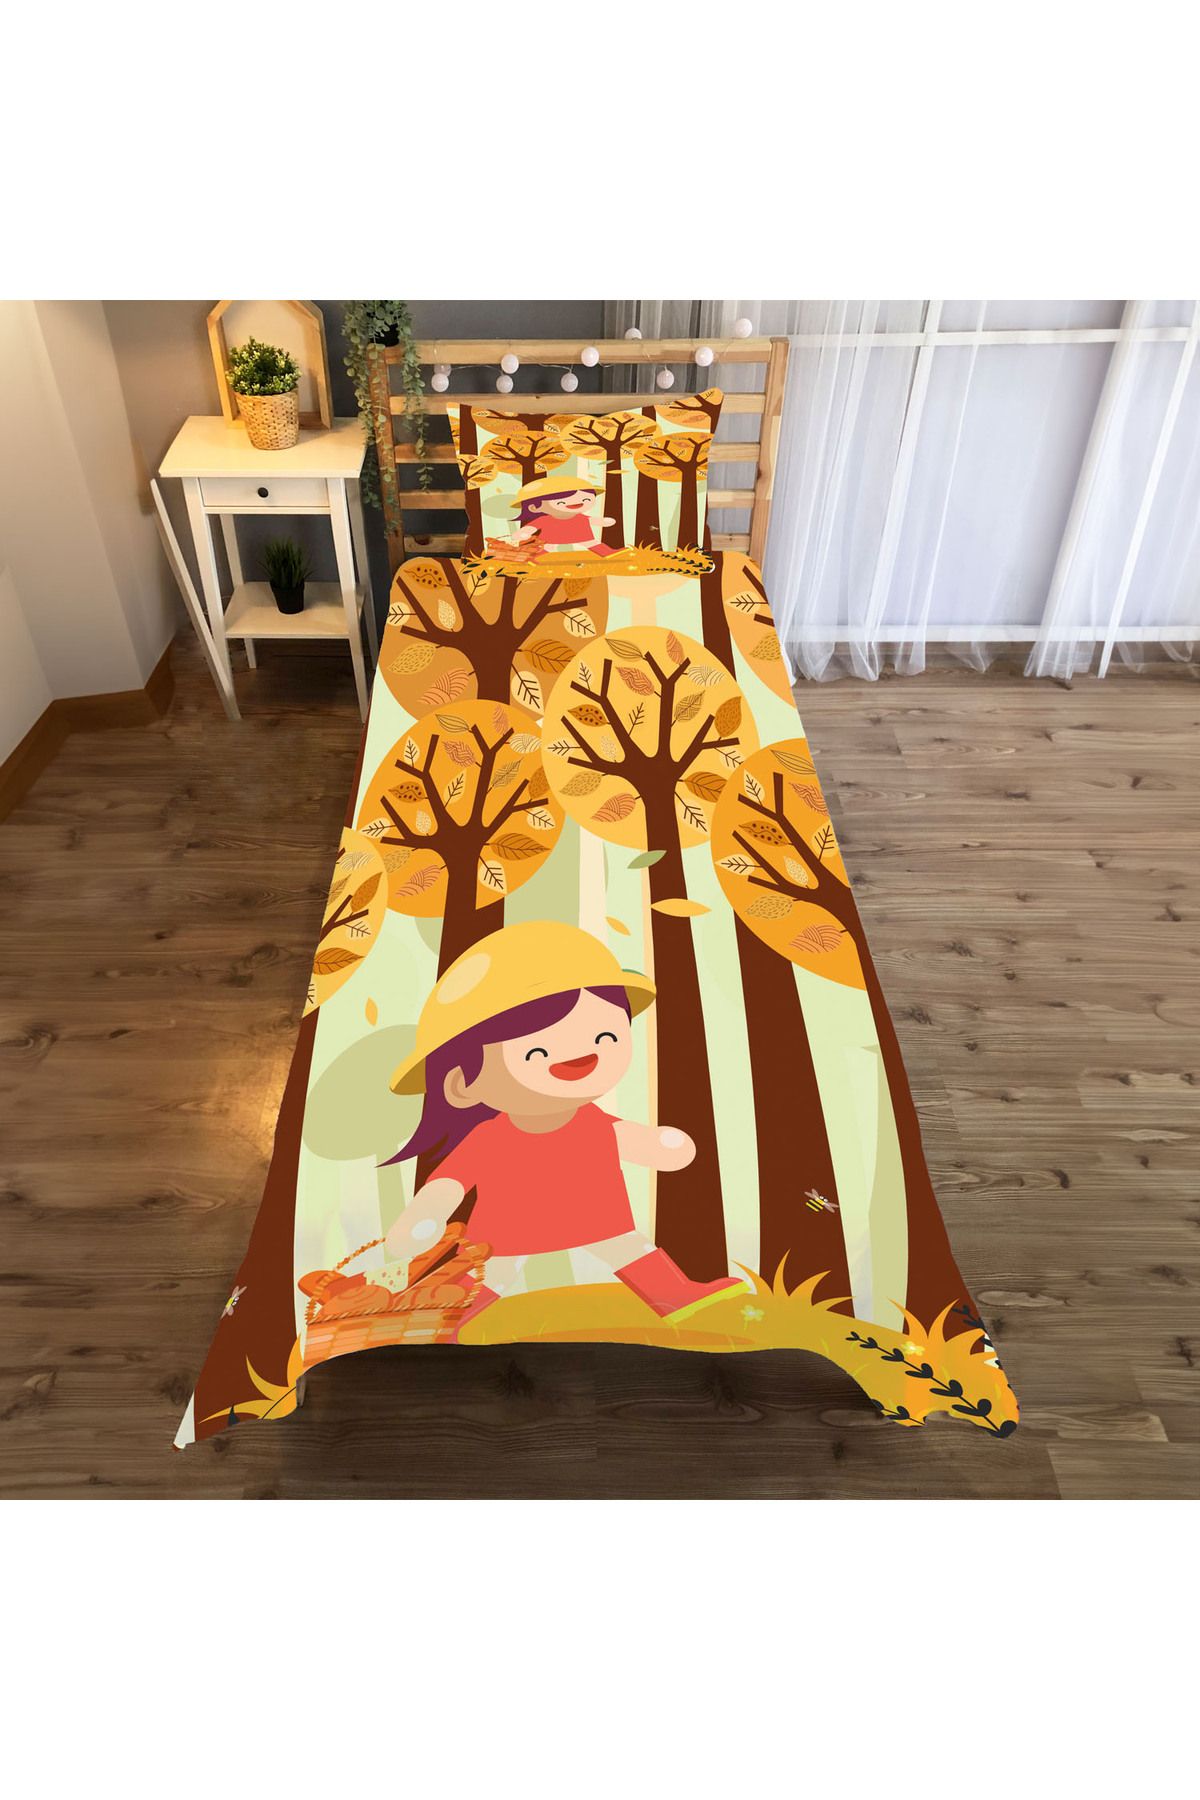 Evan Home sonbahar Desenli Yatak örtüsü ve yastık kılıfı 2li takımı